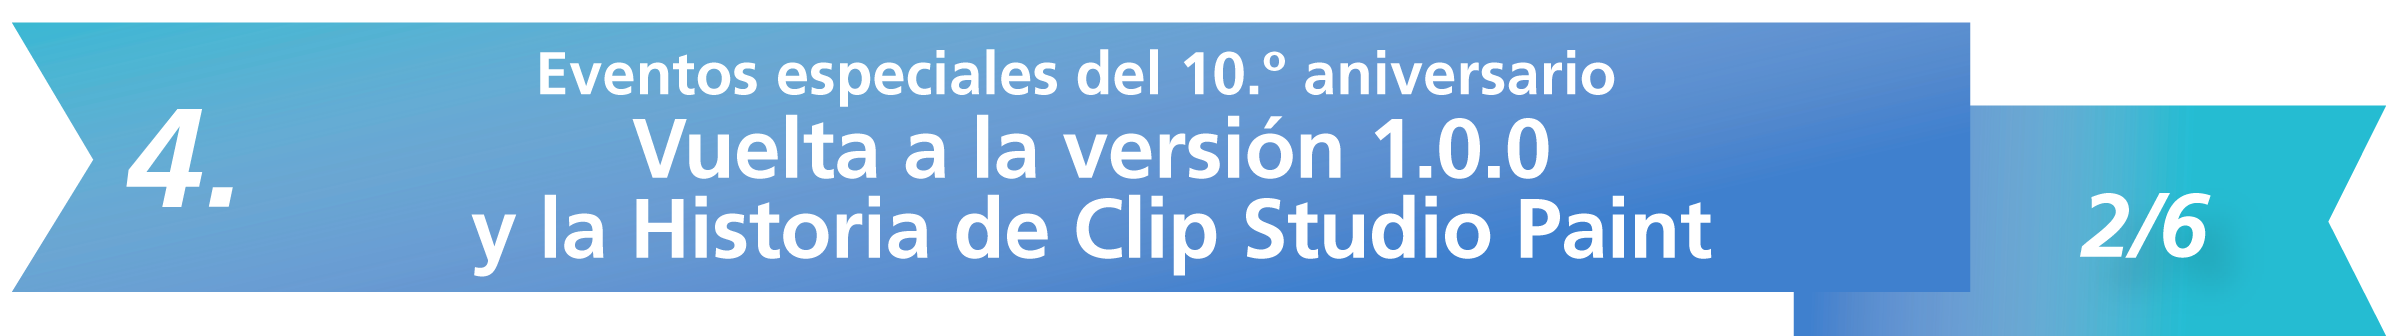 4. Eventos especiales del 10.º aniversario del 2/6: Vuelta a la versión 1.0.0 y la Historia de Clip Studio Paint